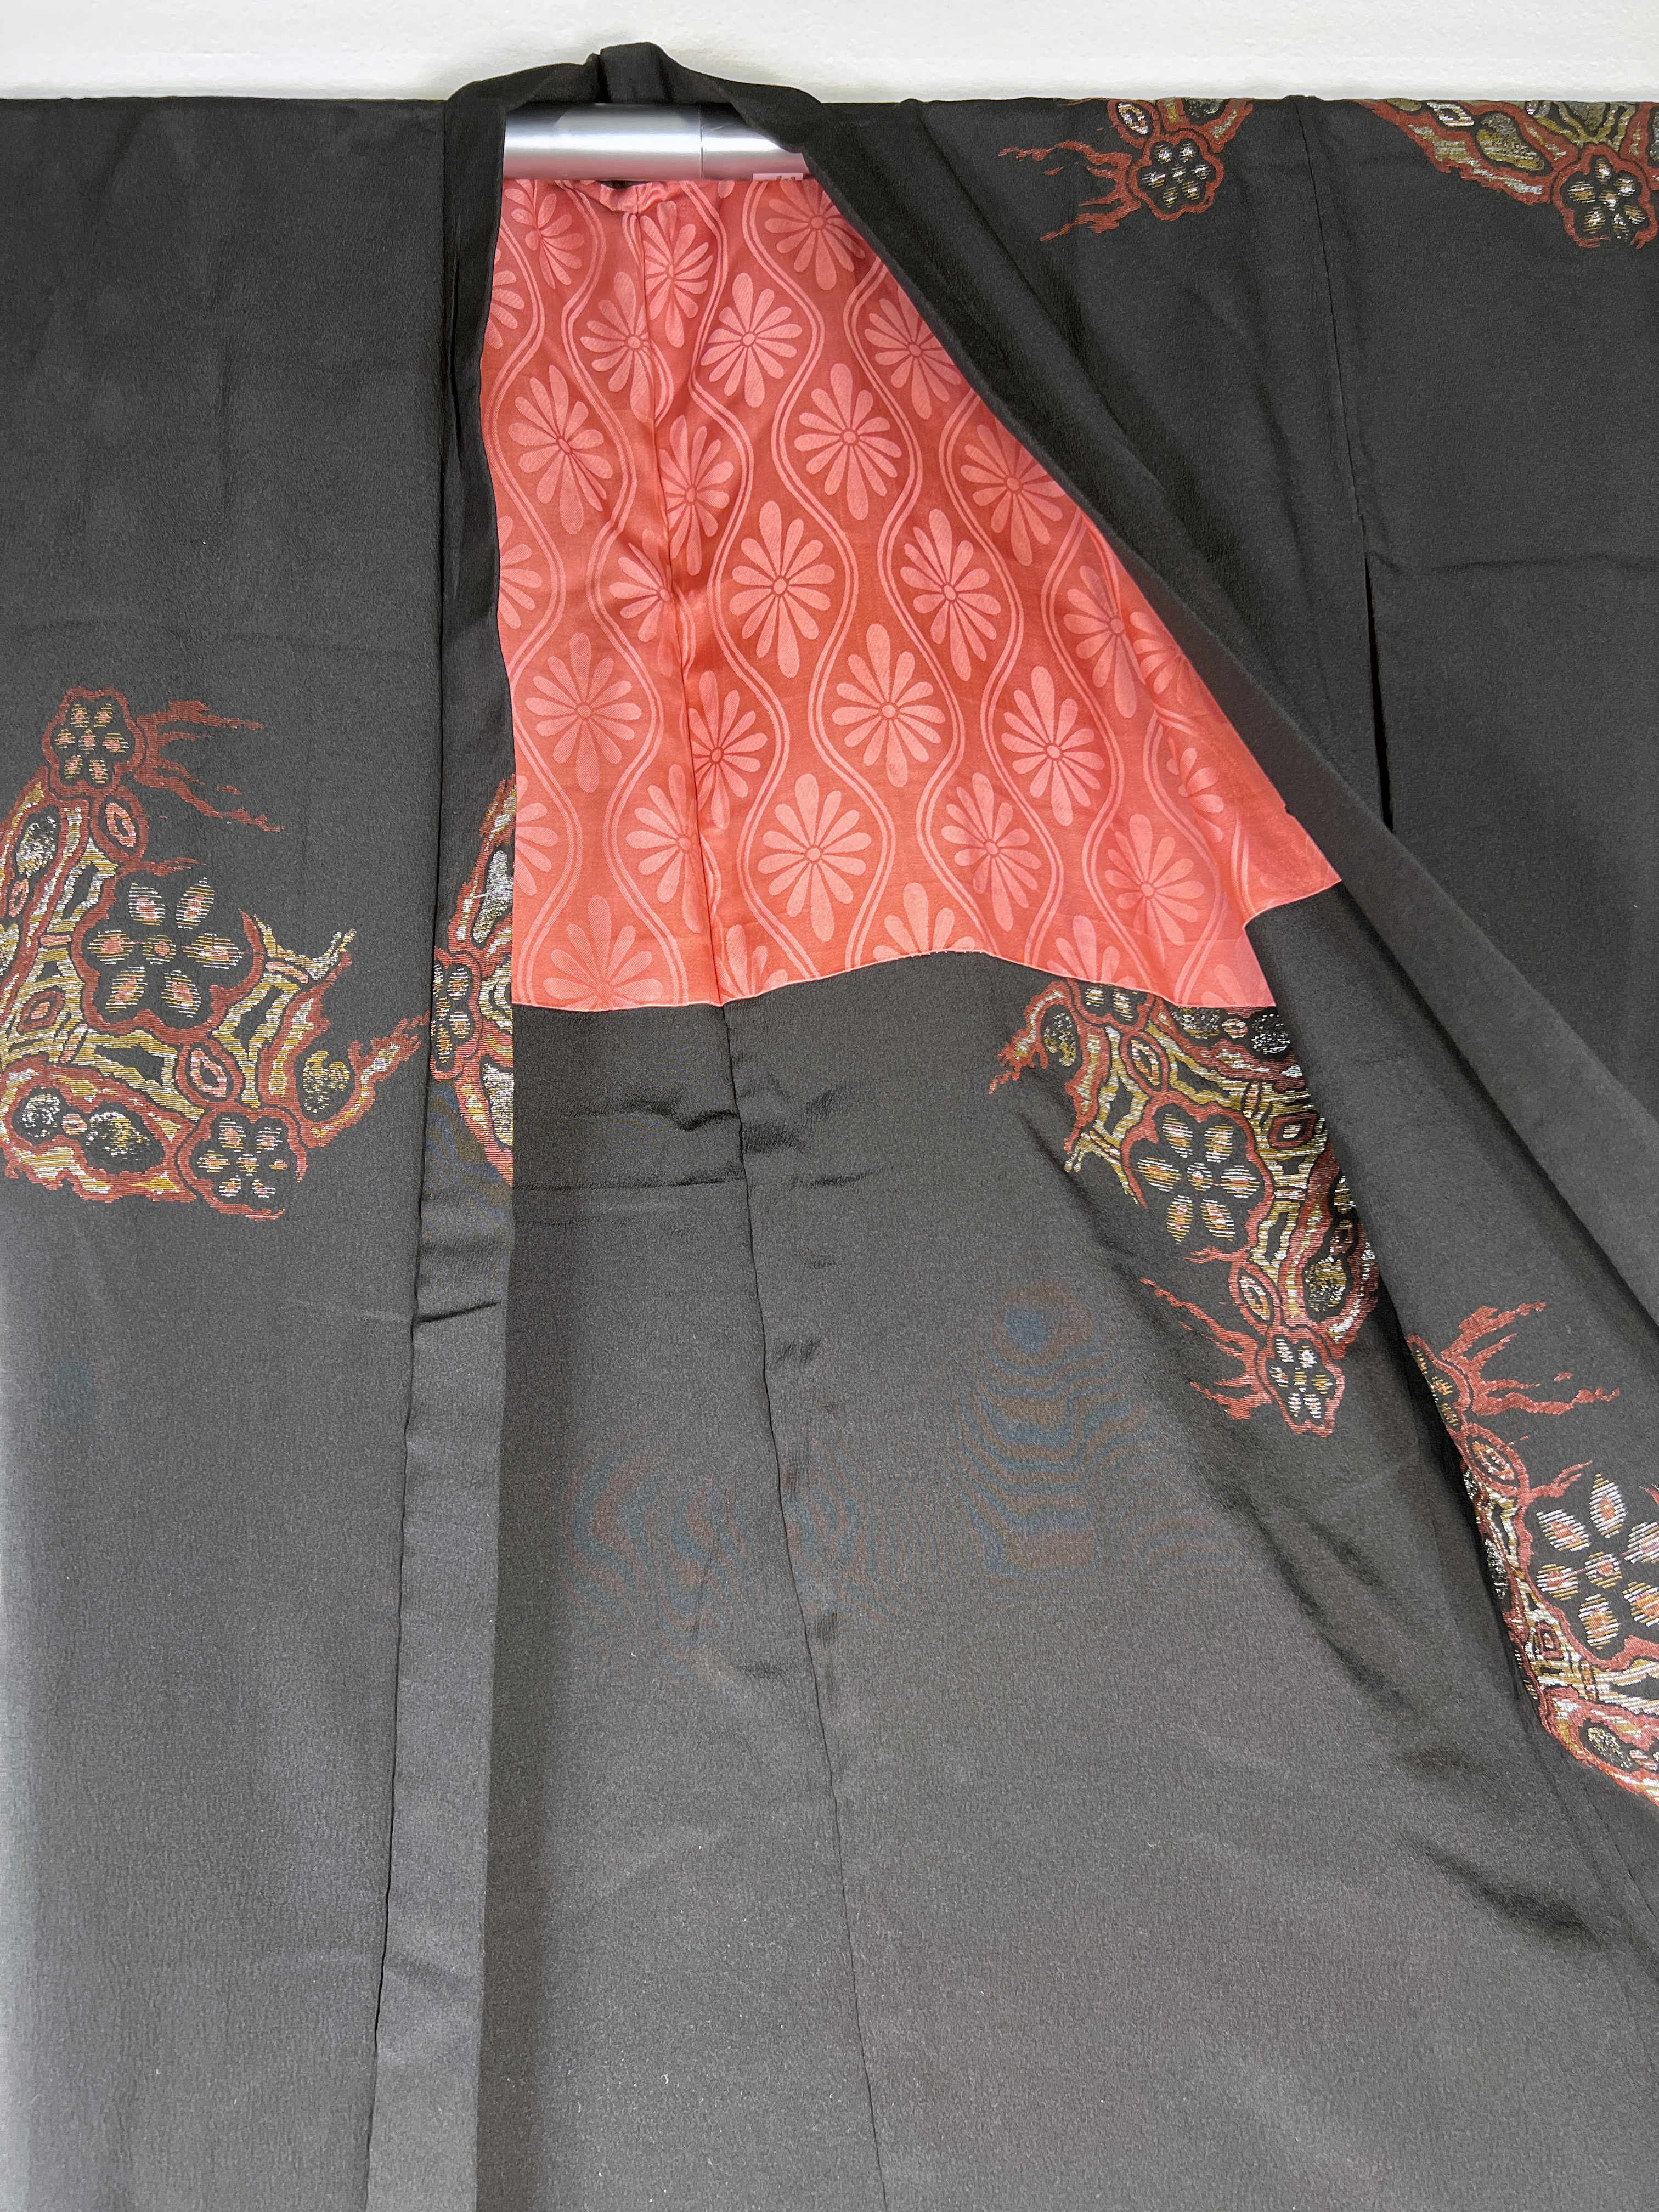 2 Vintage Japanese Kimonos Haoris image 3